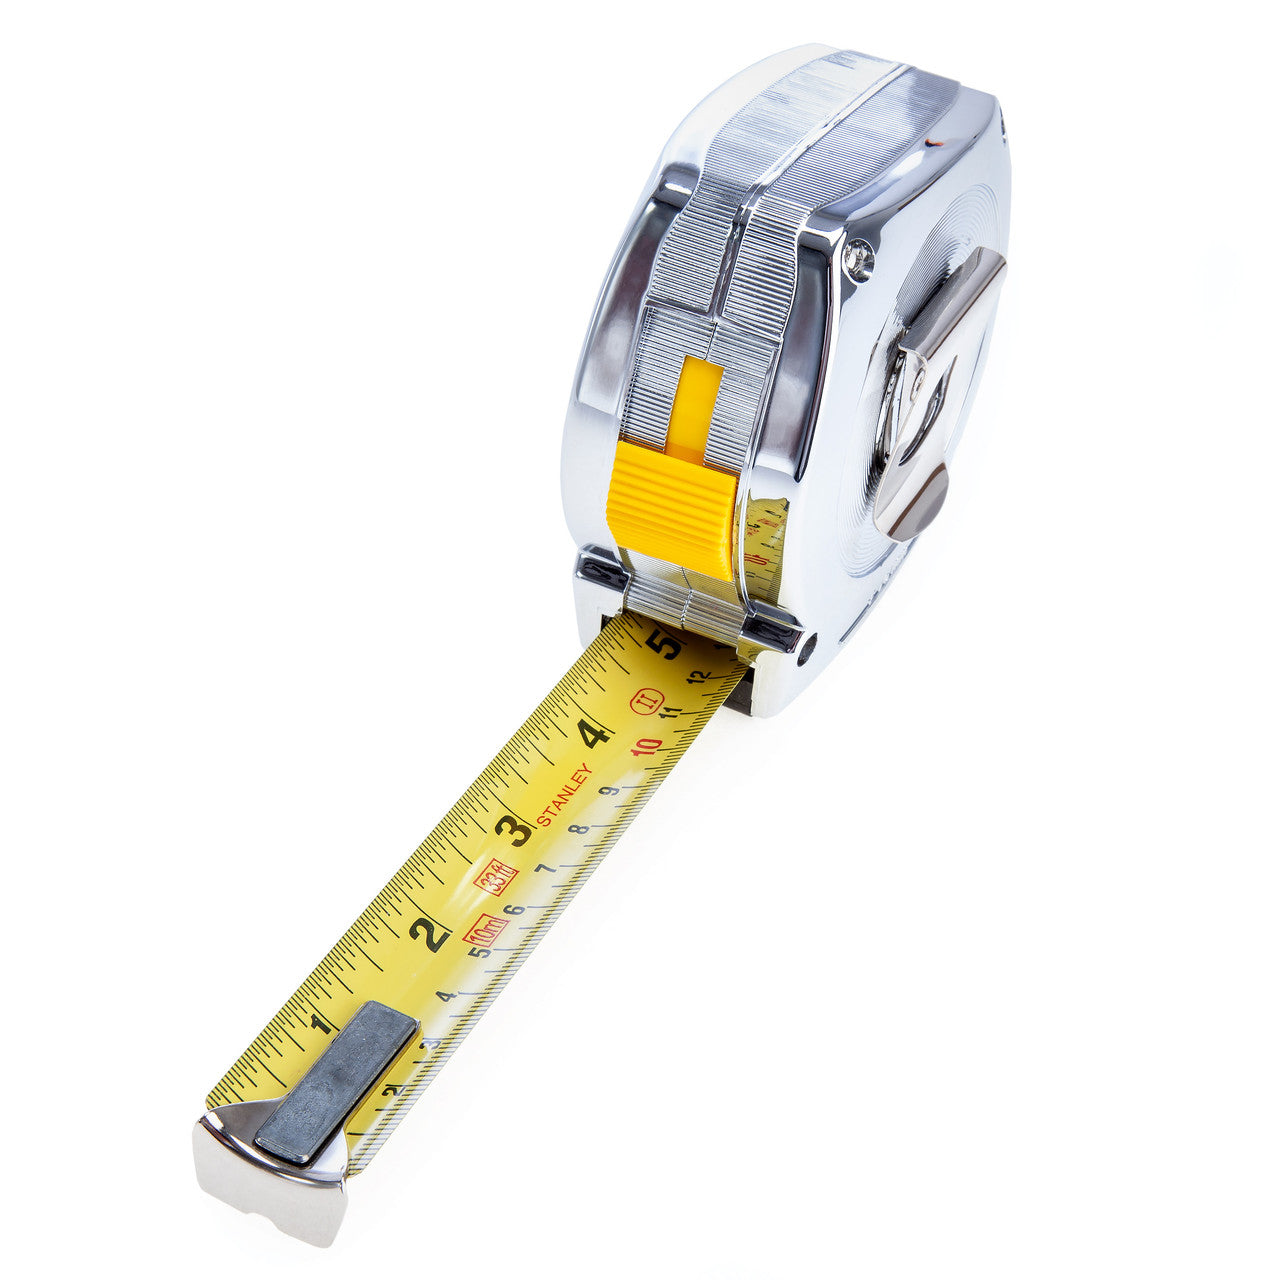 Stanley 0-33-443 Powerlock Metric/Imperial Tape Measure 10m